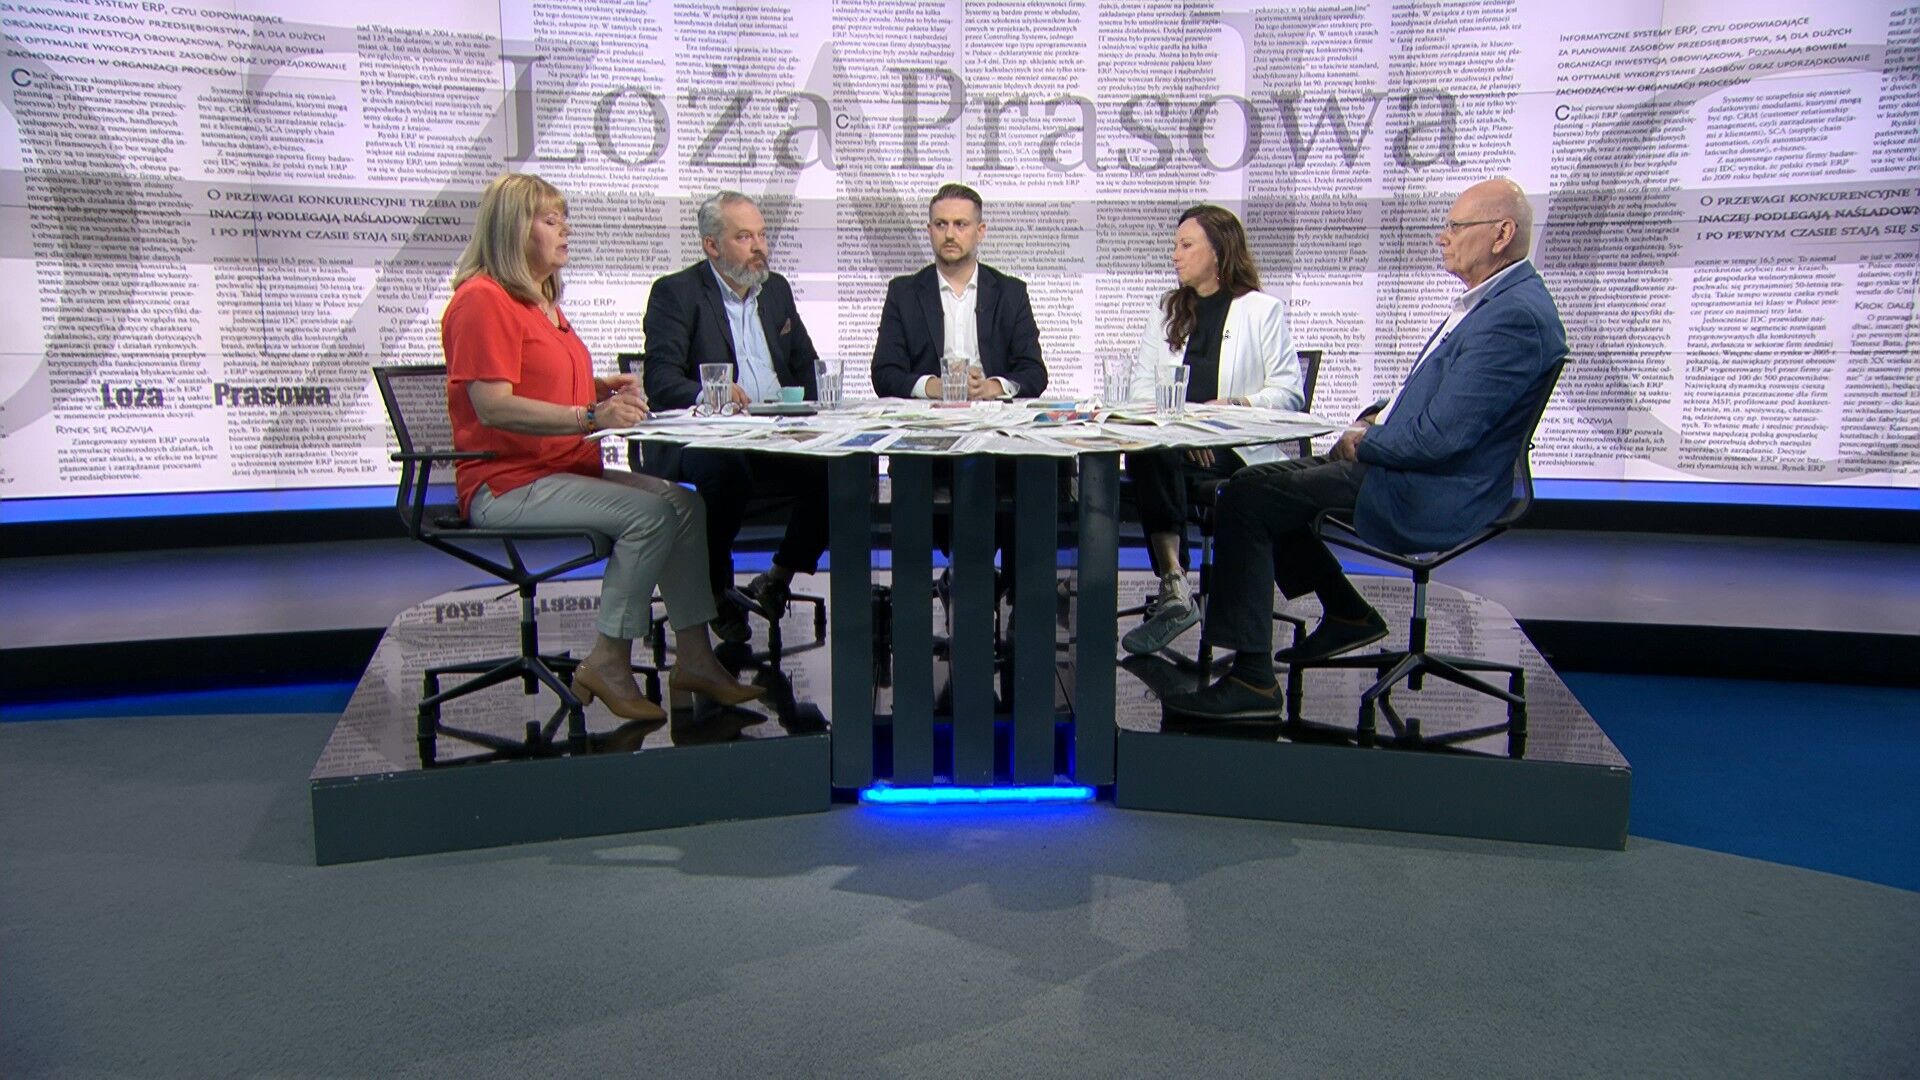 Adam Szostkiewicz, Michał Szułdrzyński, Kamil Dziubka, Agata Kondzińska